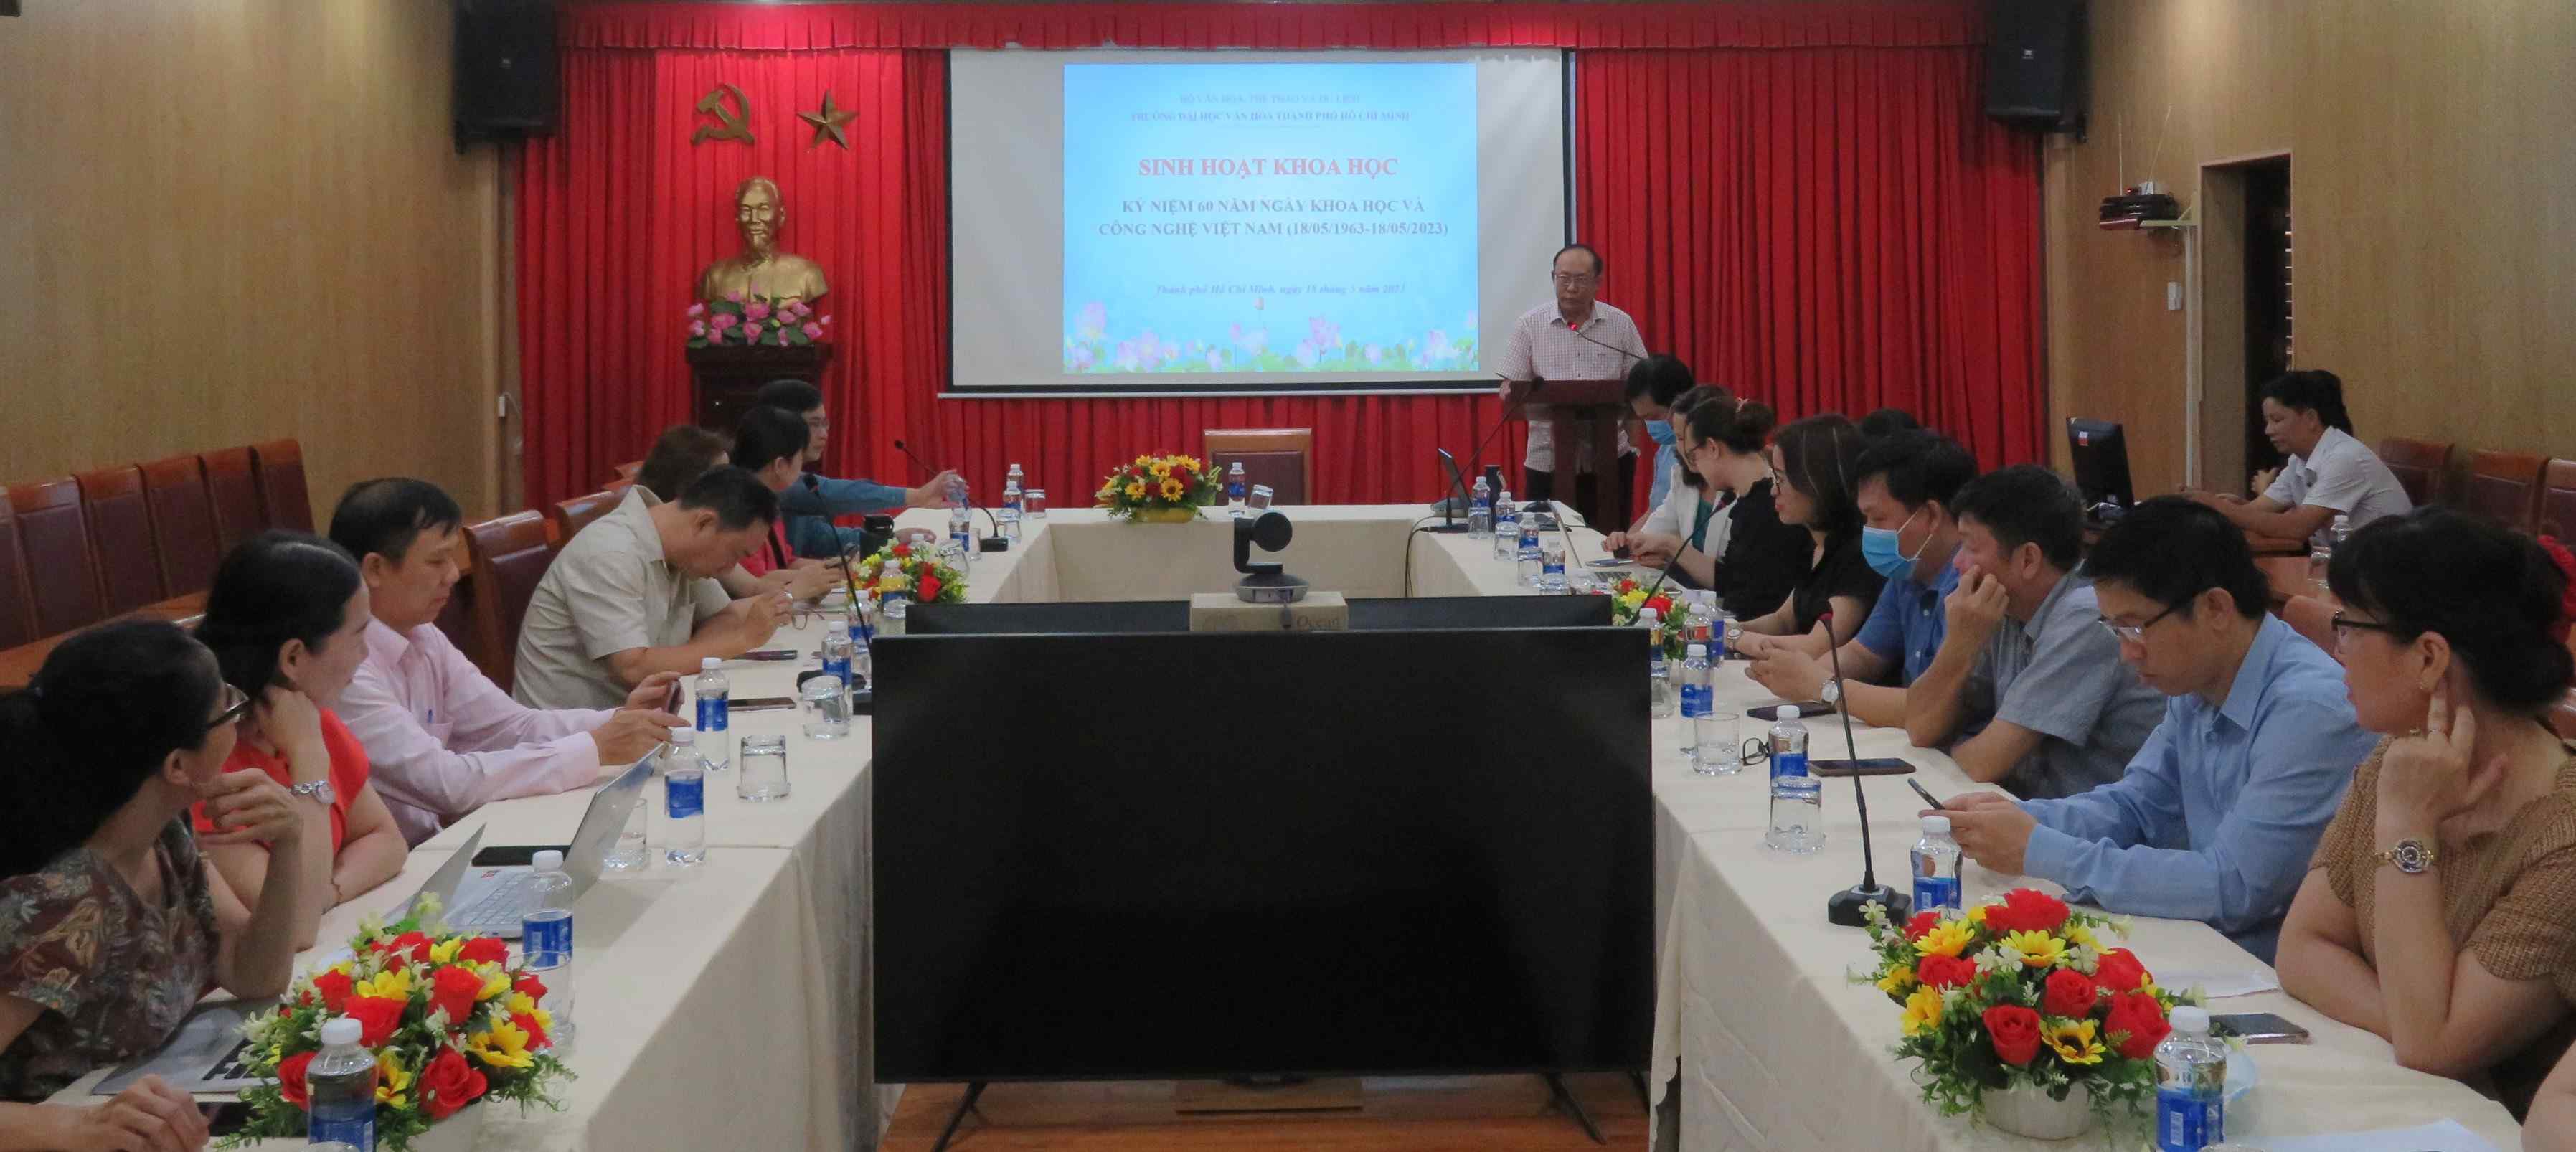 Sinh hoạt khoa học nhân ngày Khoa học và Công nghệ Việt Nam 18-5